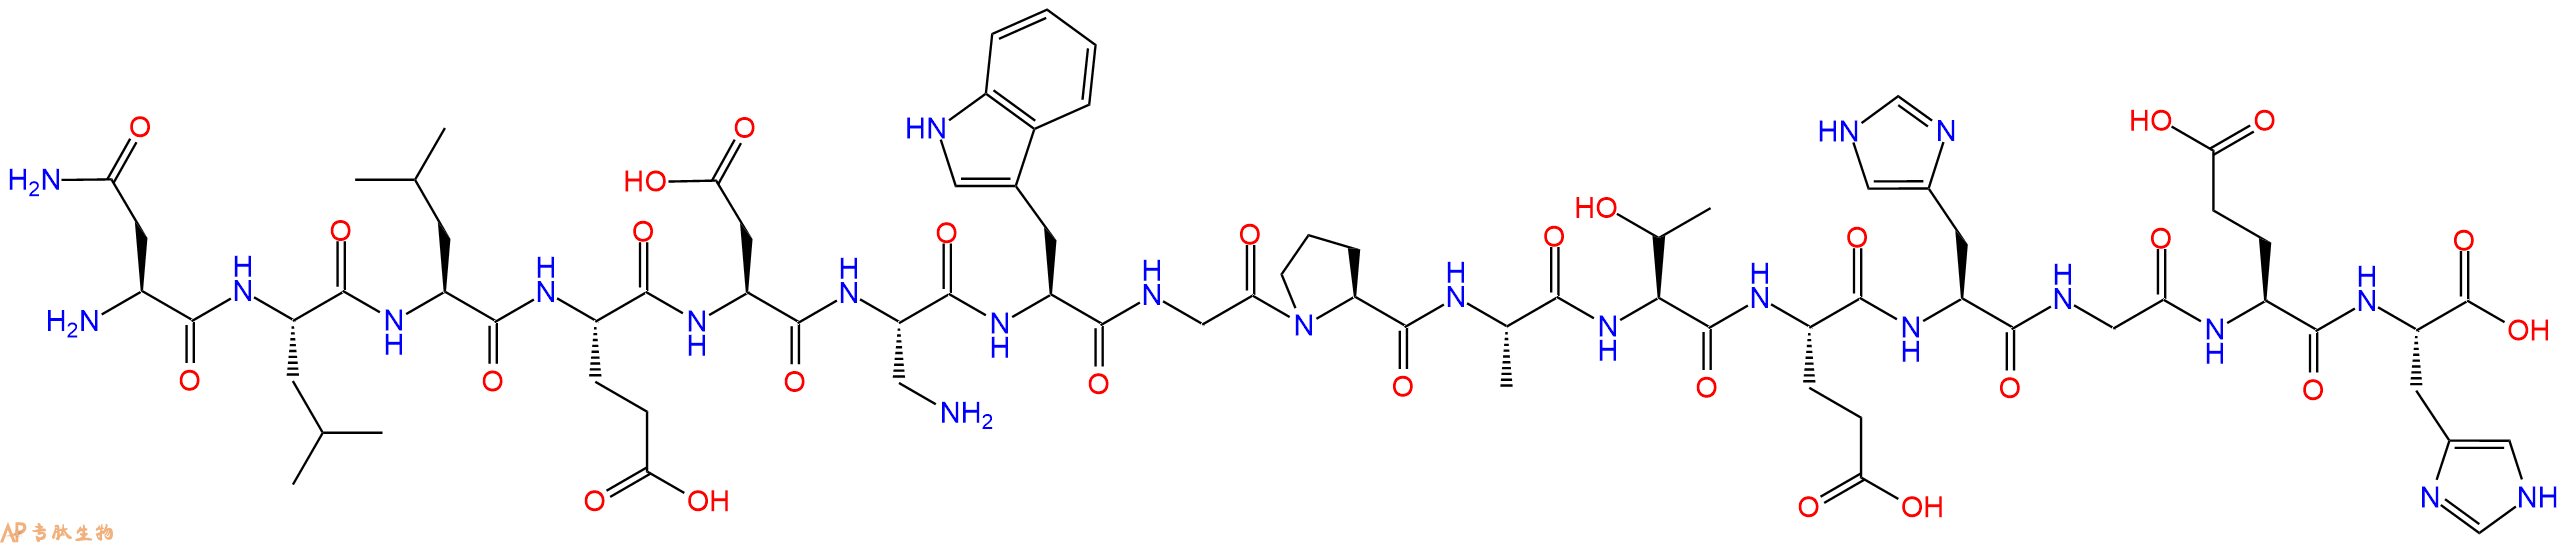 专肽生物产品H2N-Asn-Leu-Leu-Glu-Asp-Dap-Trp-Gly-Pro-Ala-Thr-Gl